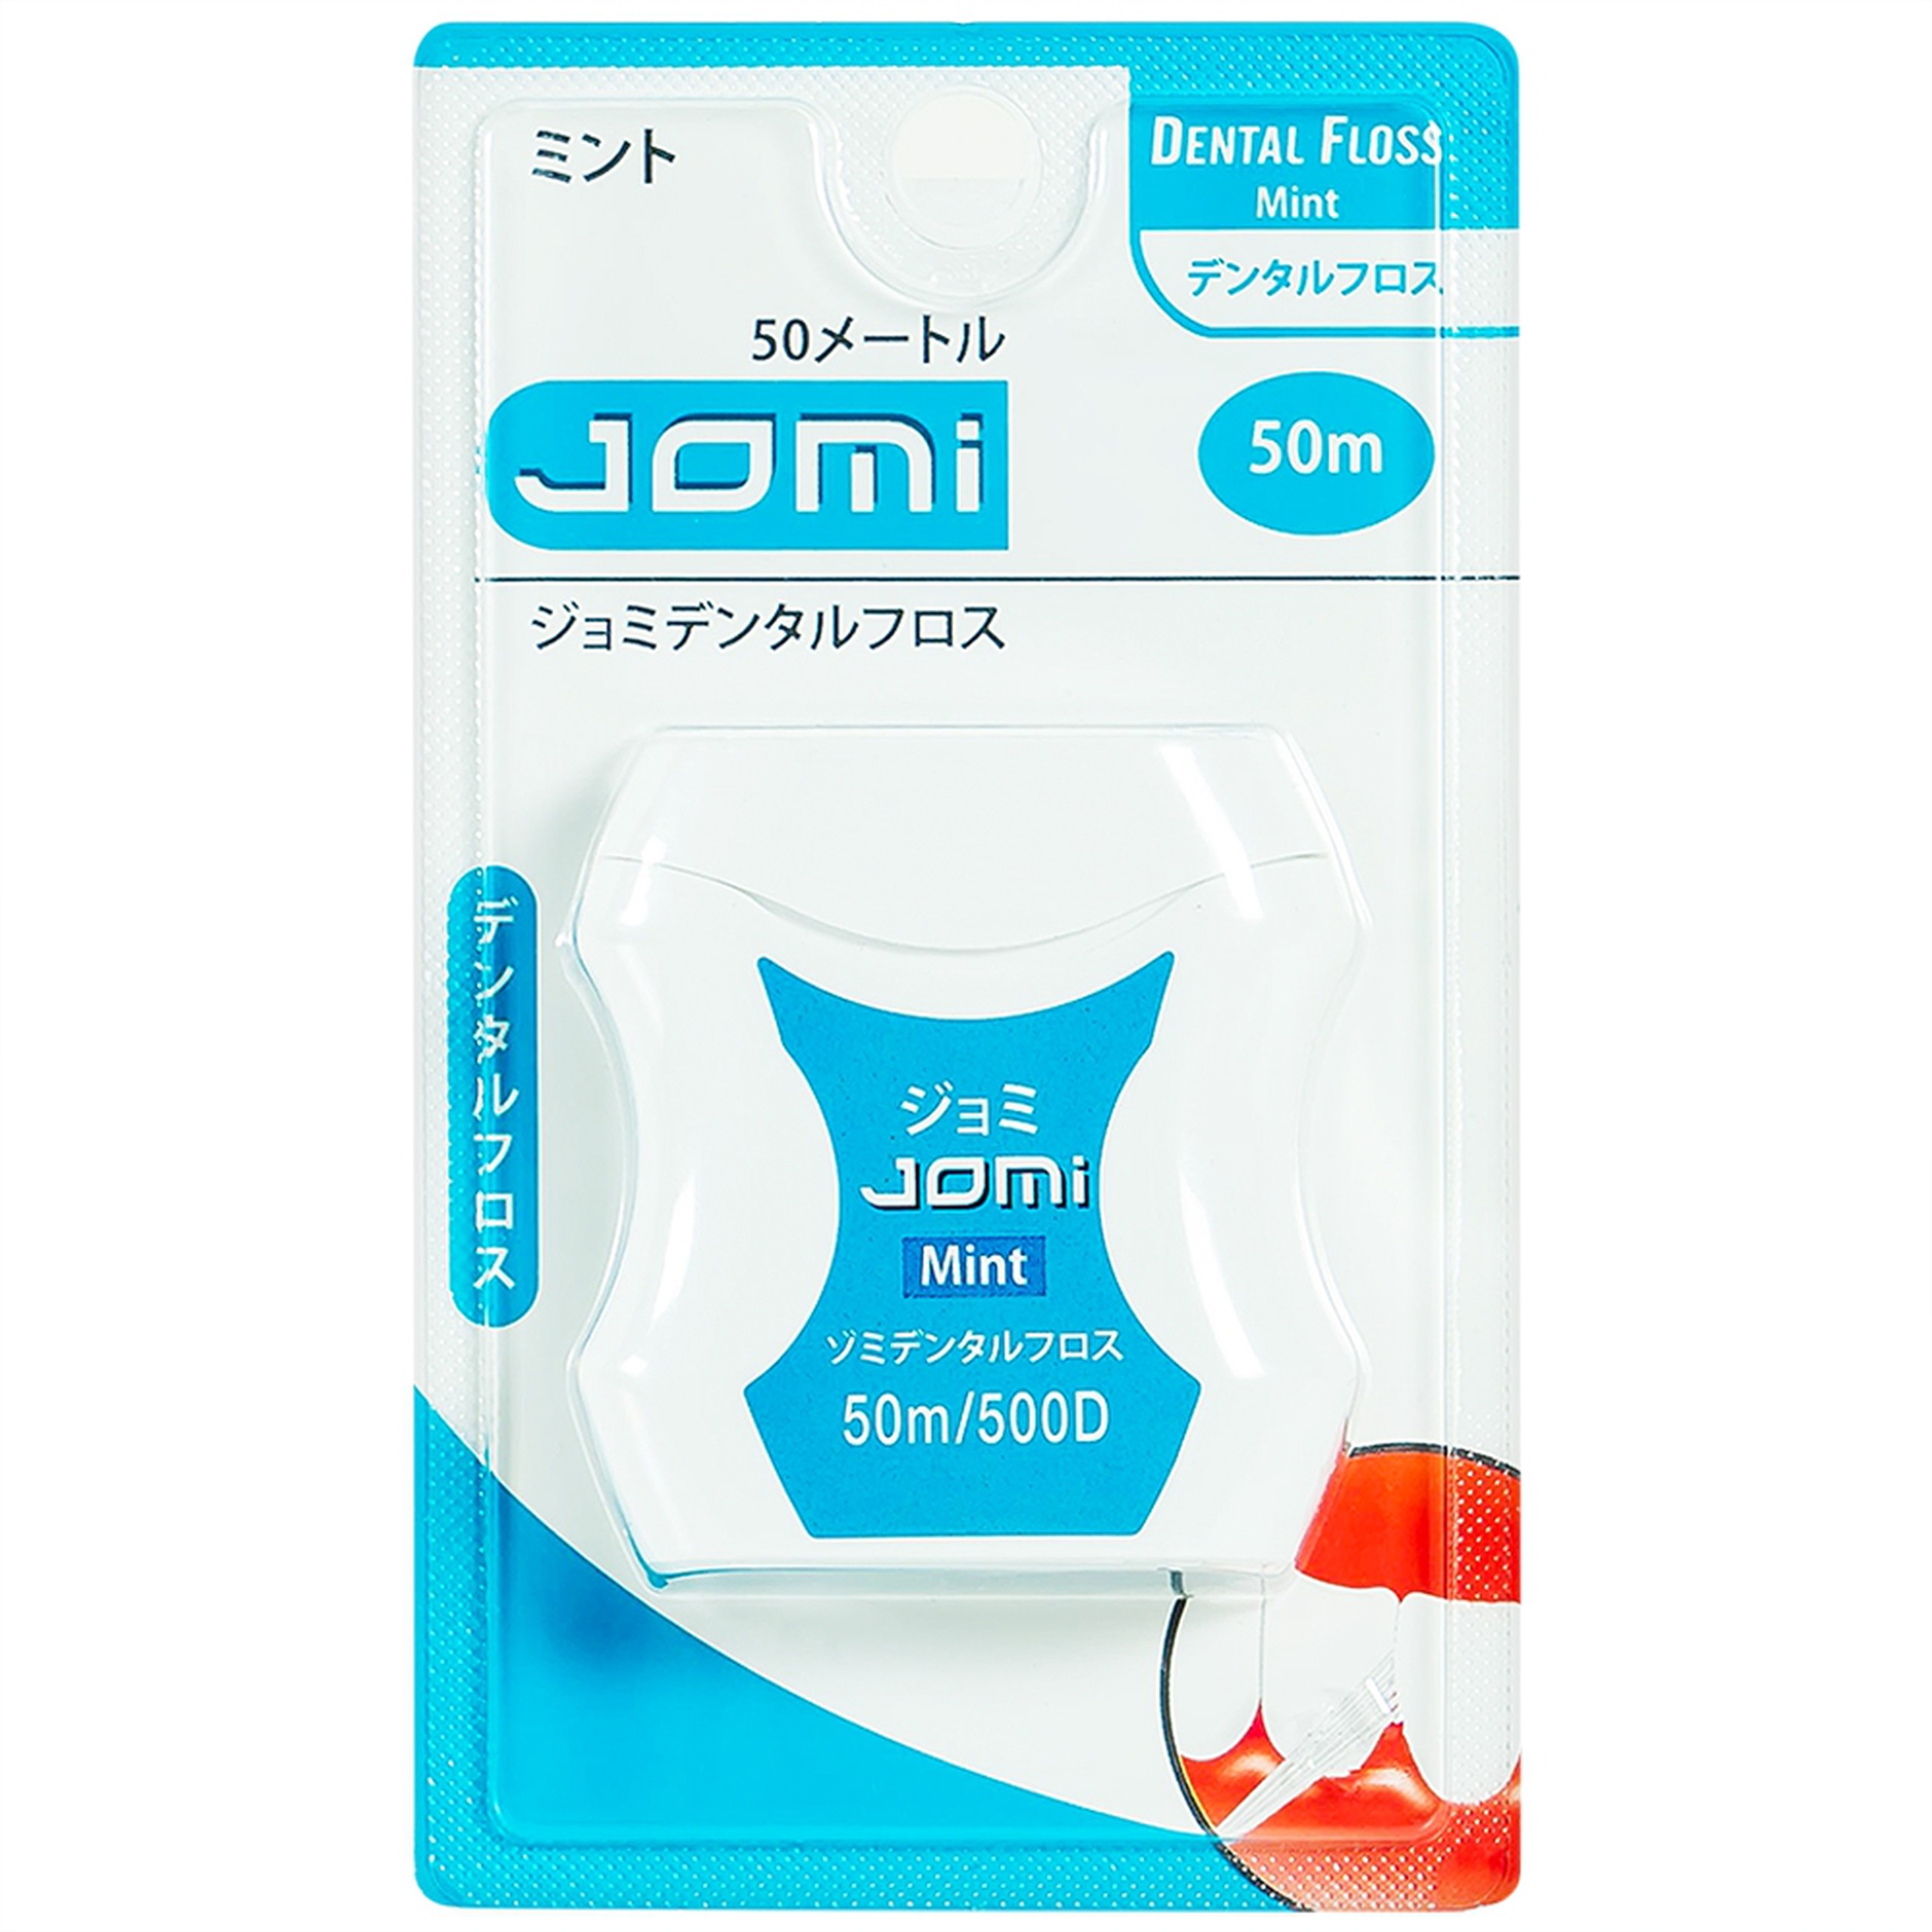 Chỉ nha khoa Jomi Dental Floss loại trừ các mảng bám, thức ăn dư thừa trong kẽ răng (50m)